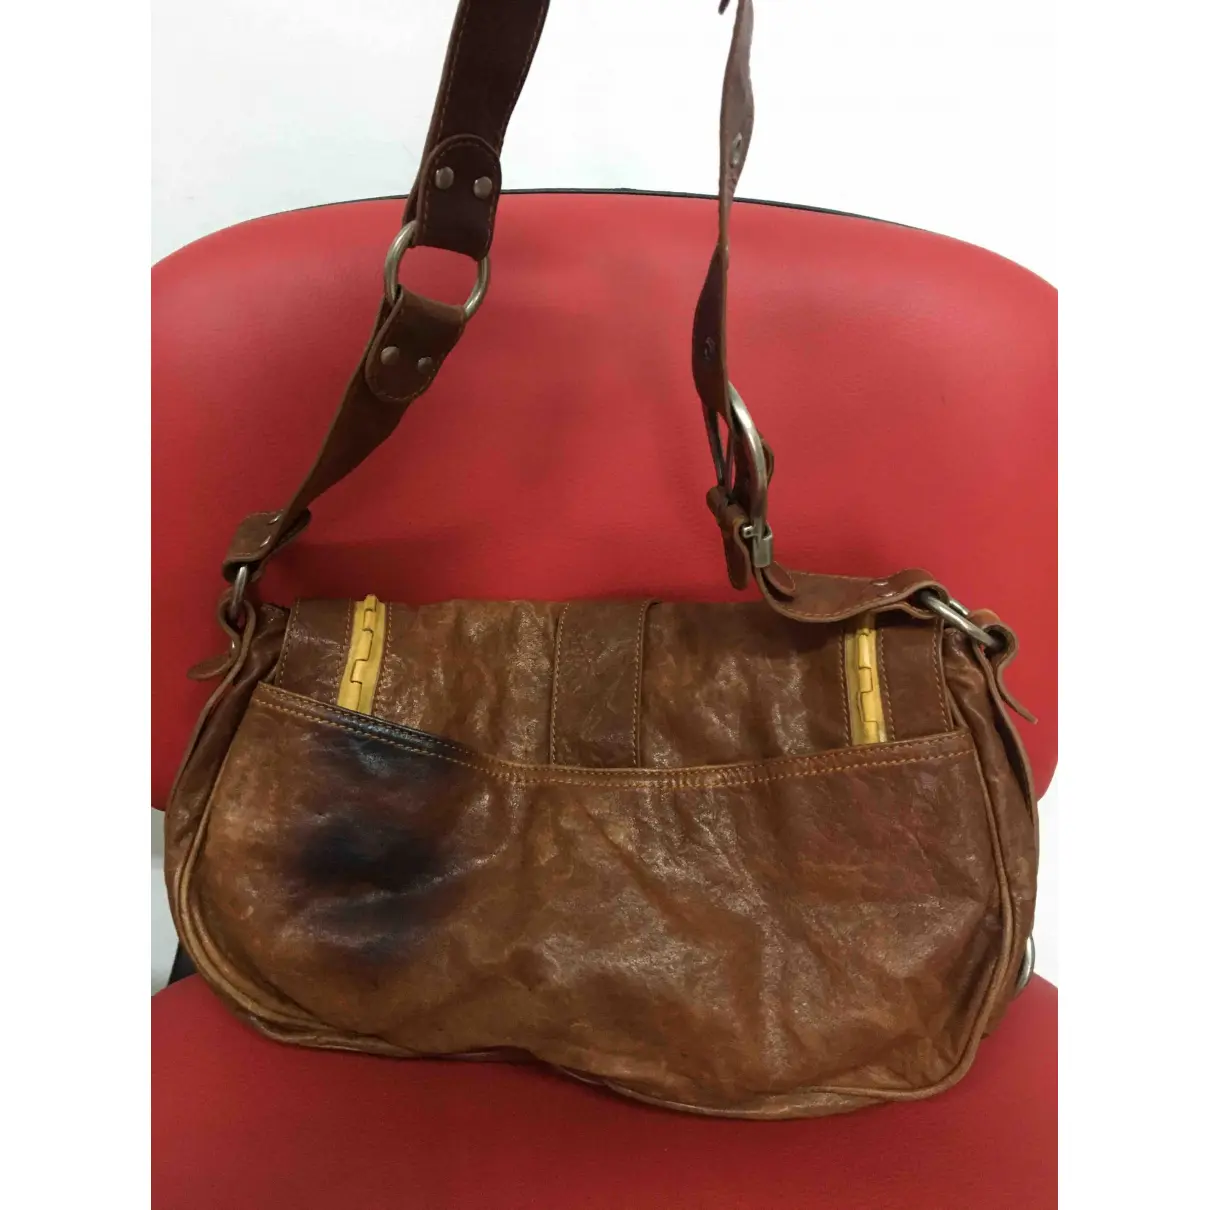 Buy Dior Gaucho leather handbag online - Vintage